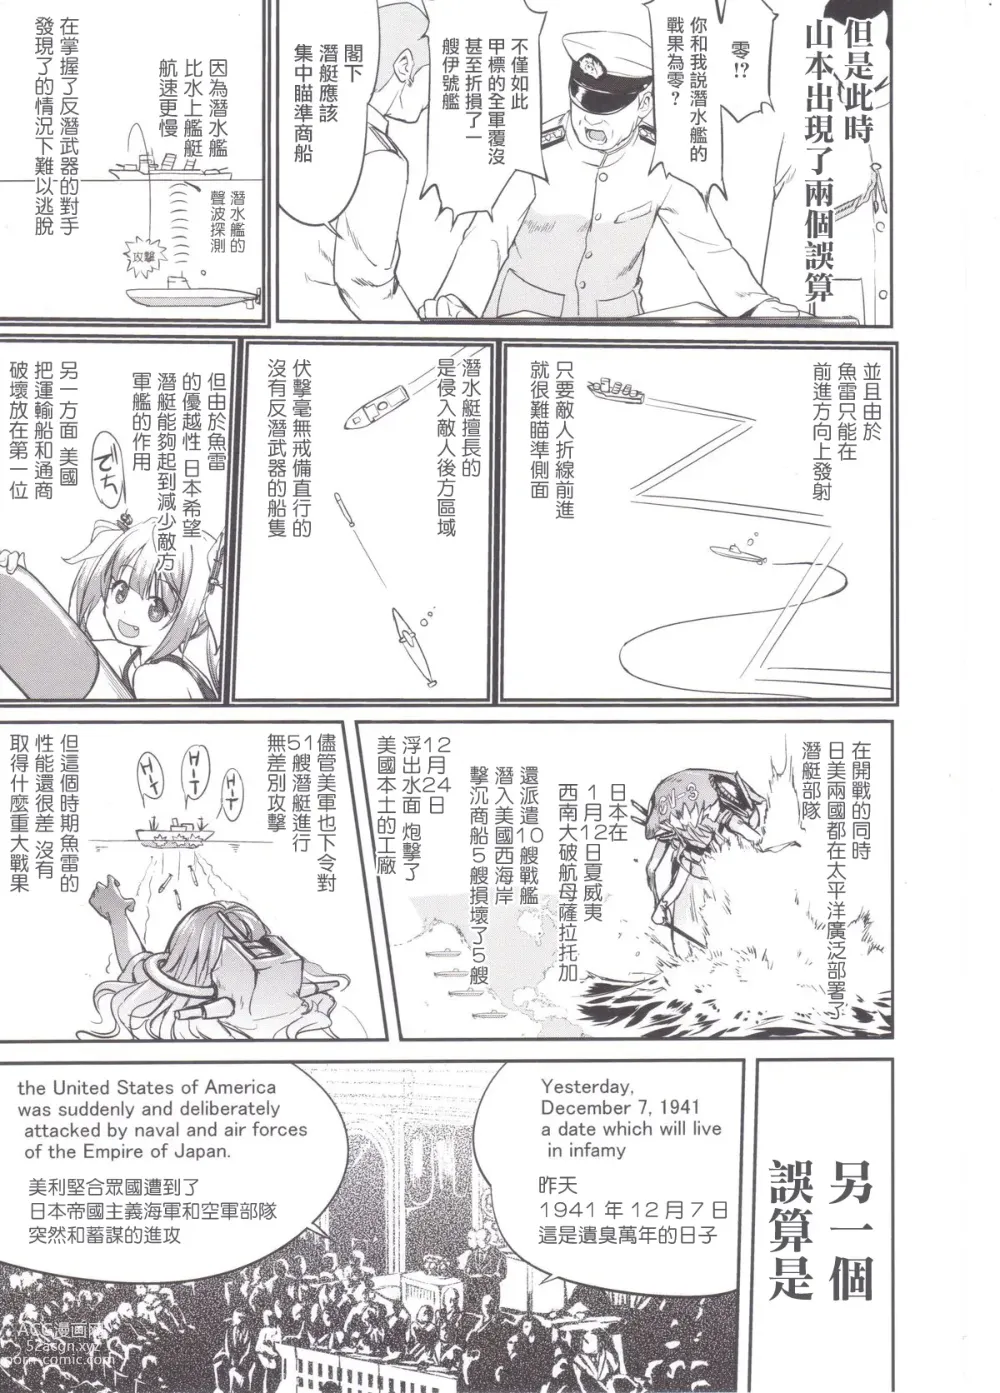 Page 12 of doujinshi Teitoku no Ketsudan MIDWAY